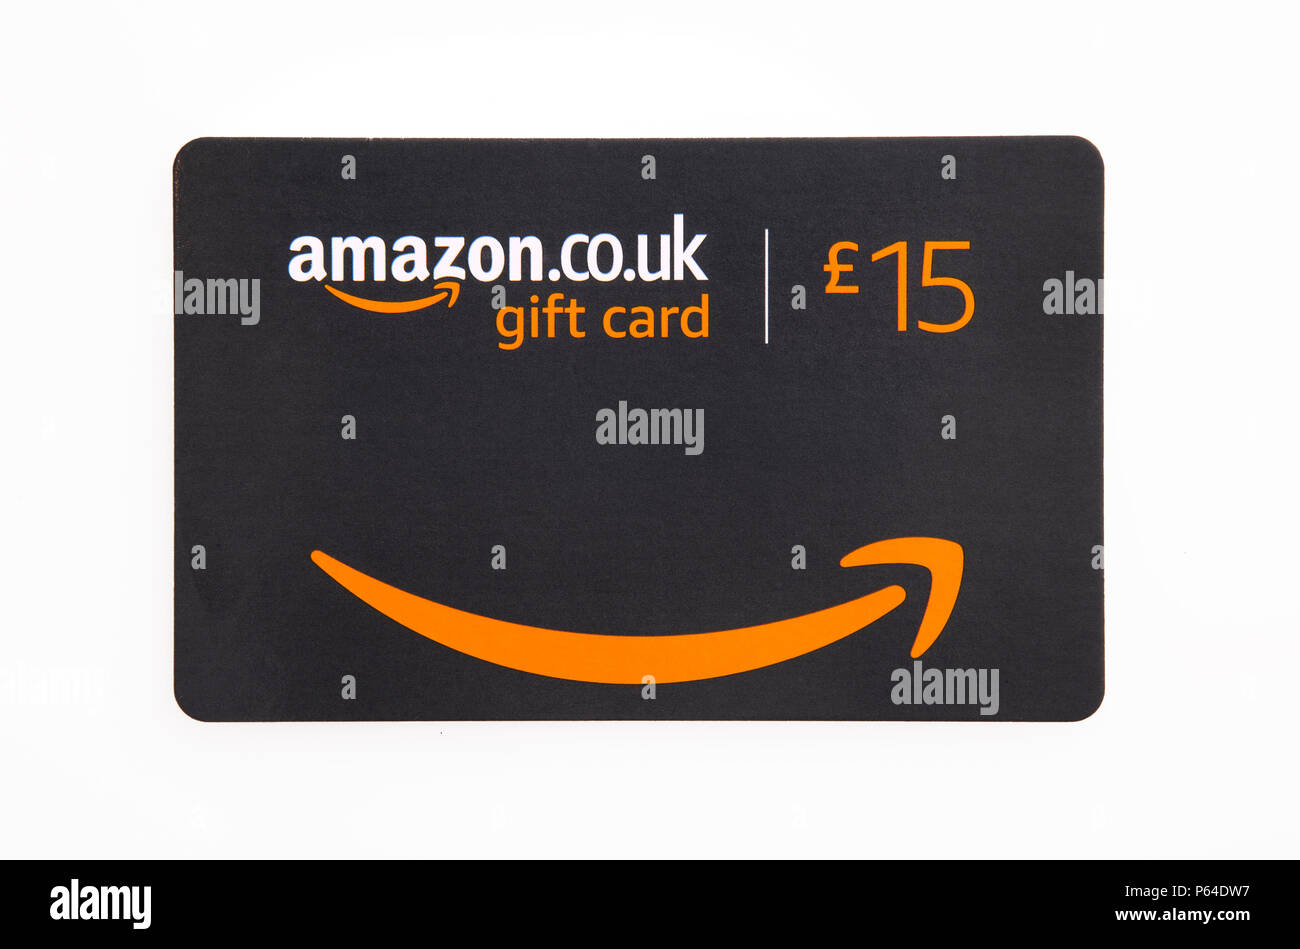 Amazon gift card Banque de photographies et d'images à haute résolution -  Alamy